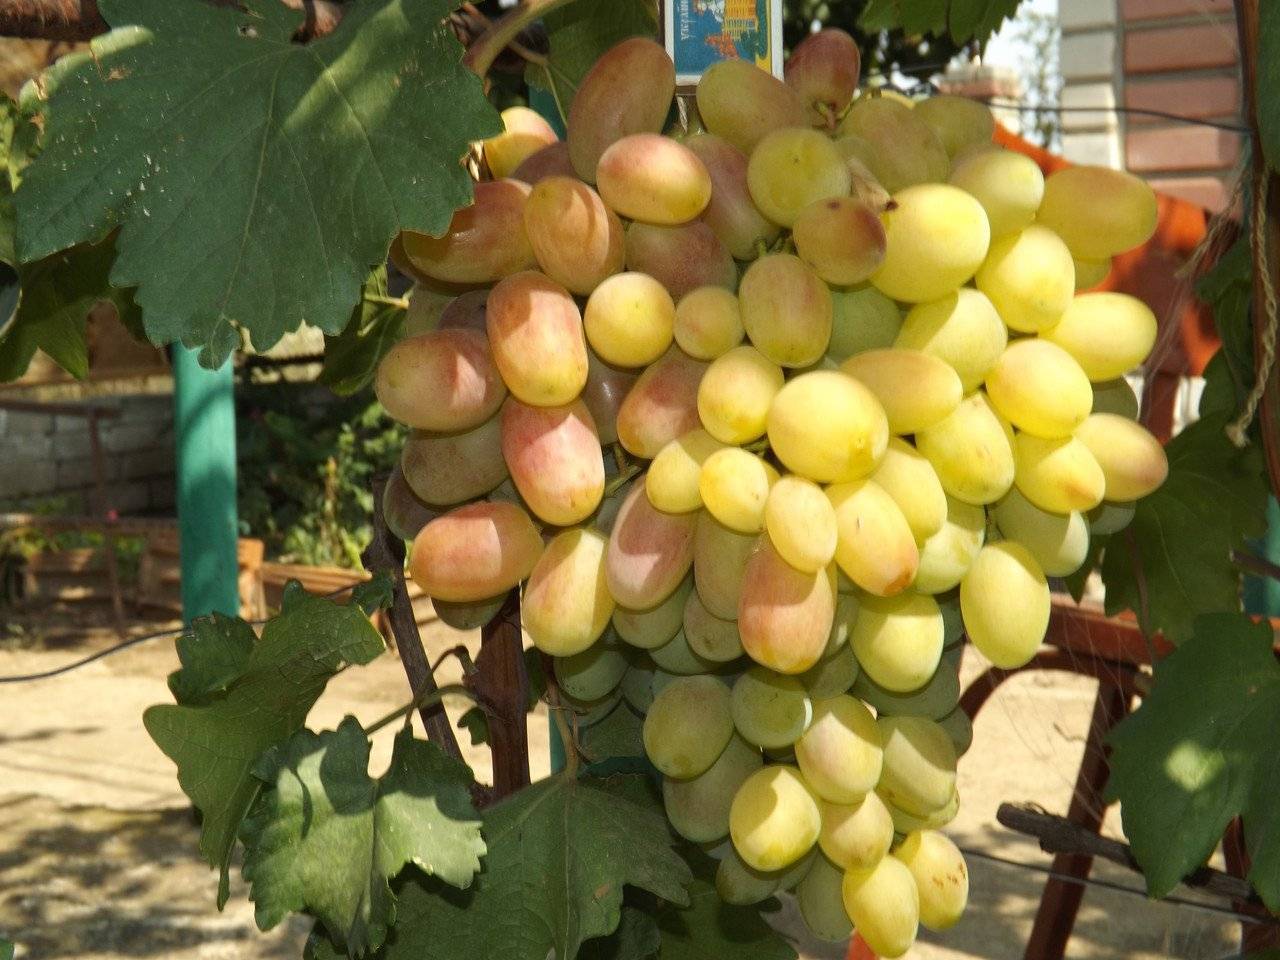 Сорт винограда юбилей новочеркасска, описание сорта с характеристикой и отзывами, а также особенности посадки и выращивания, фото